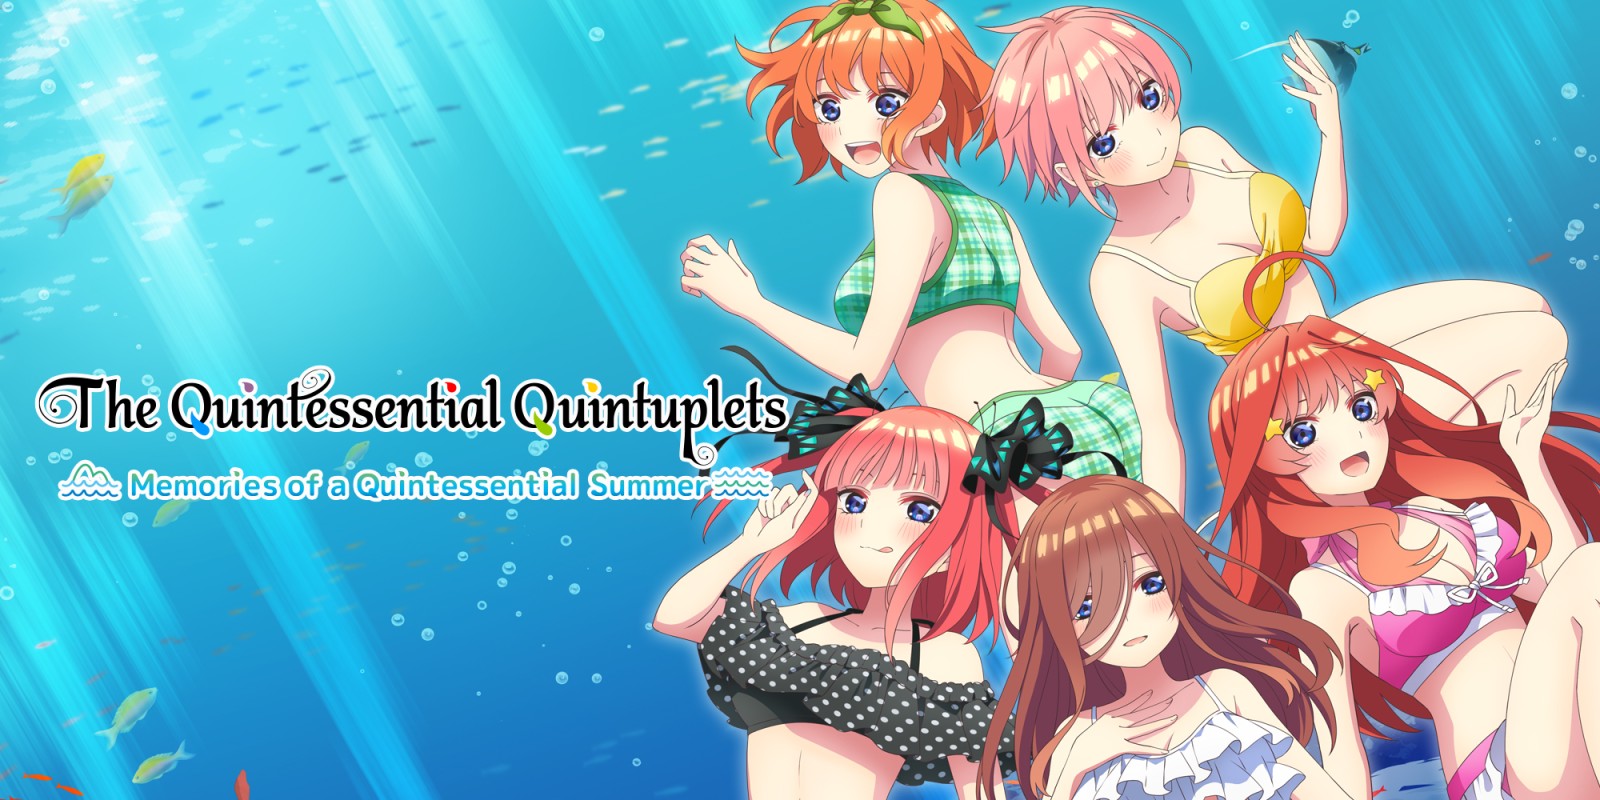 The Quintessential Quintuplets - Memories of a Quintessential Summer